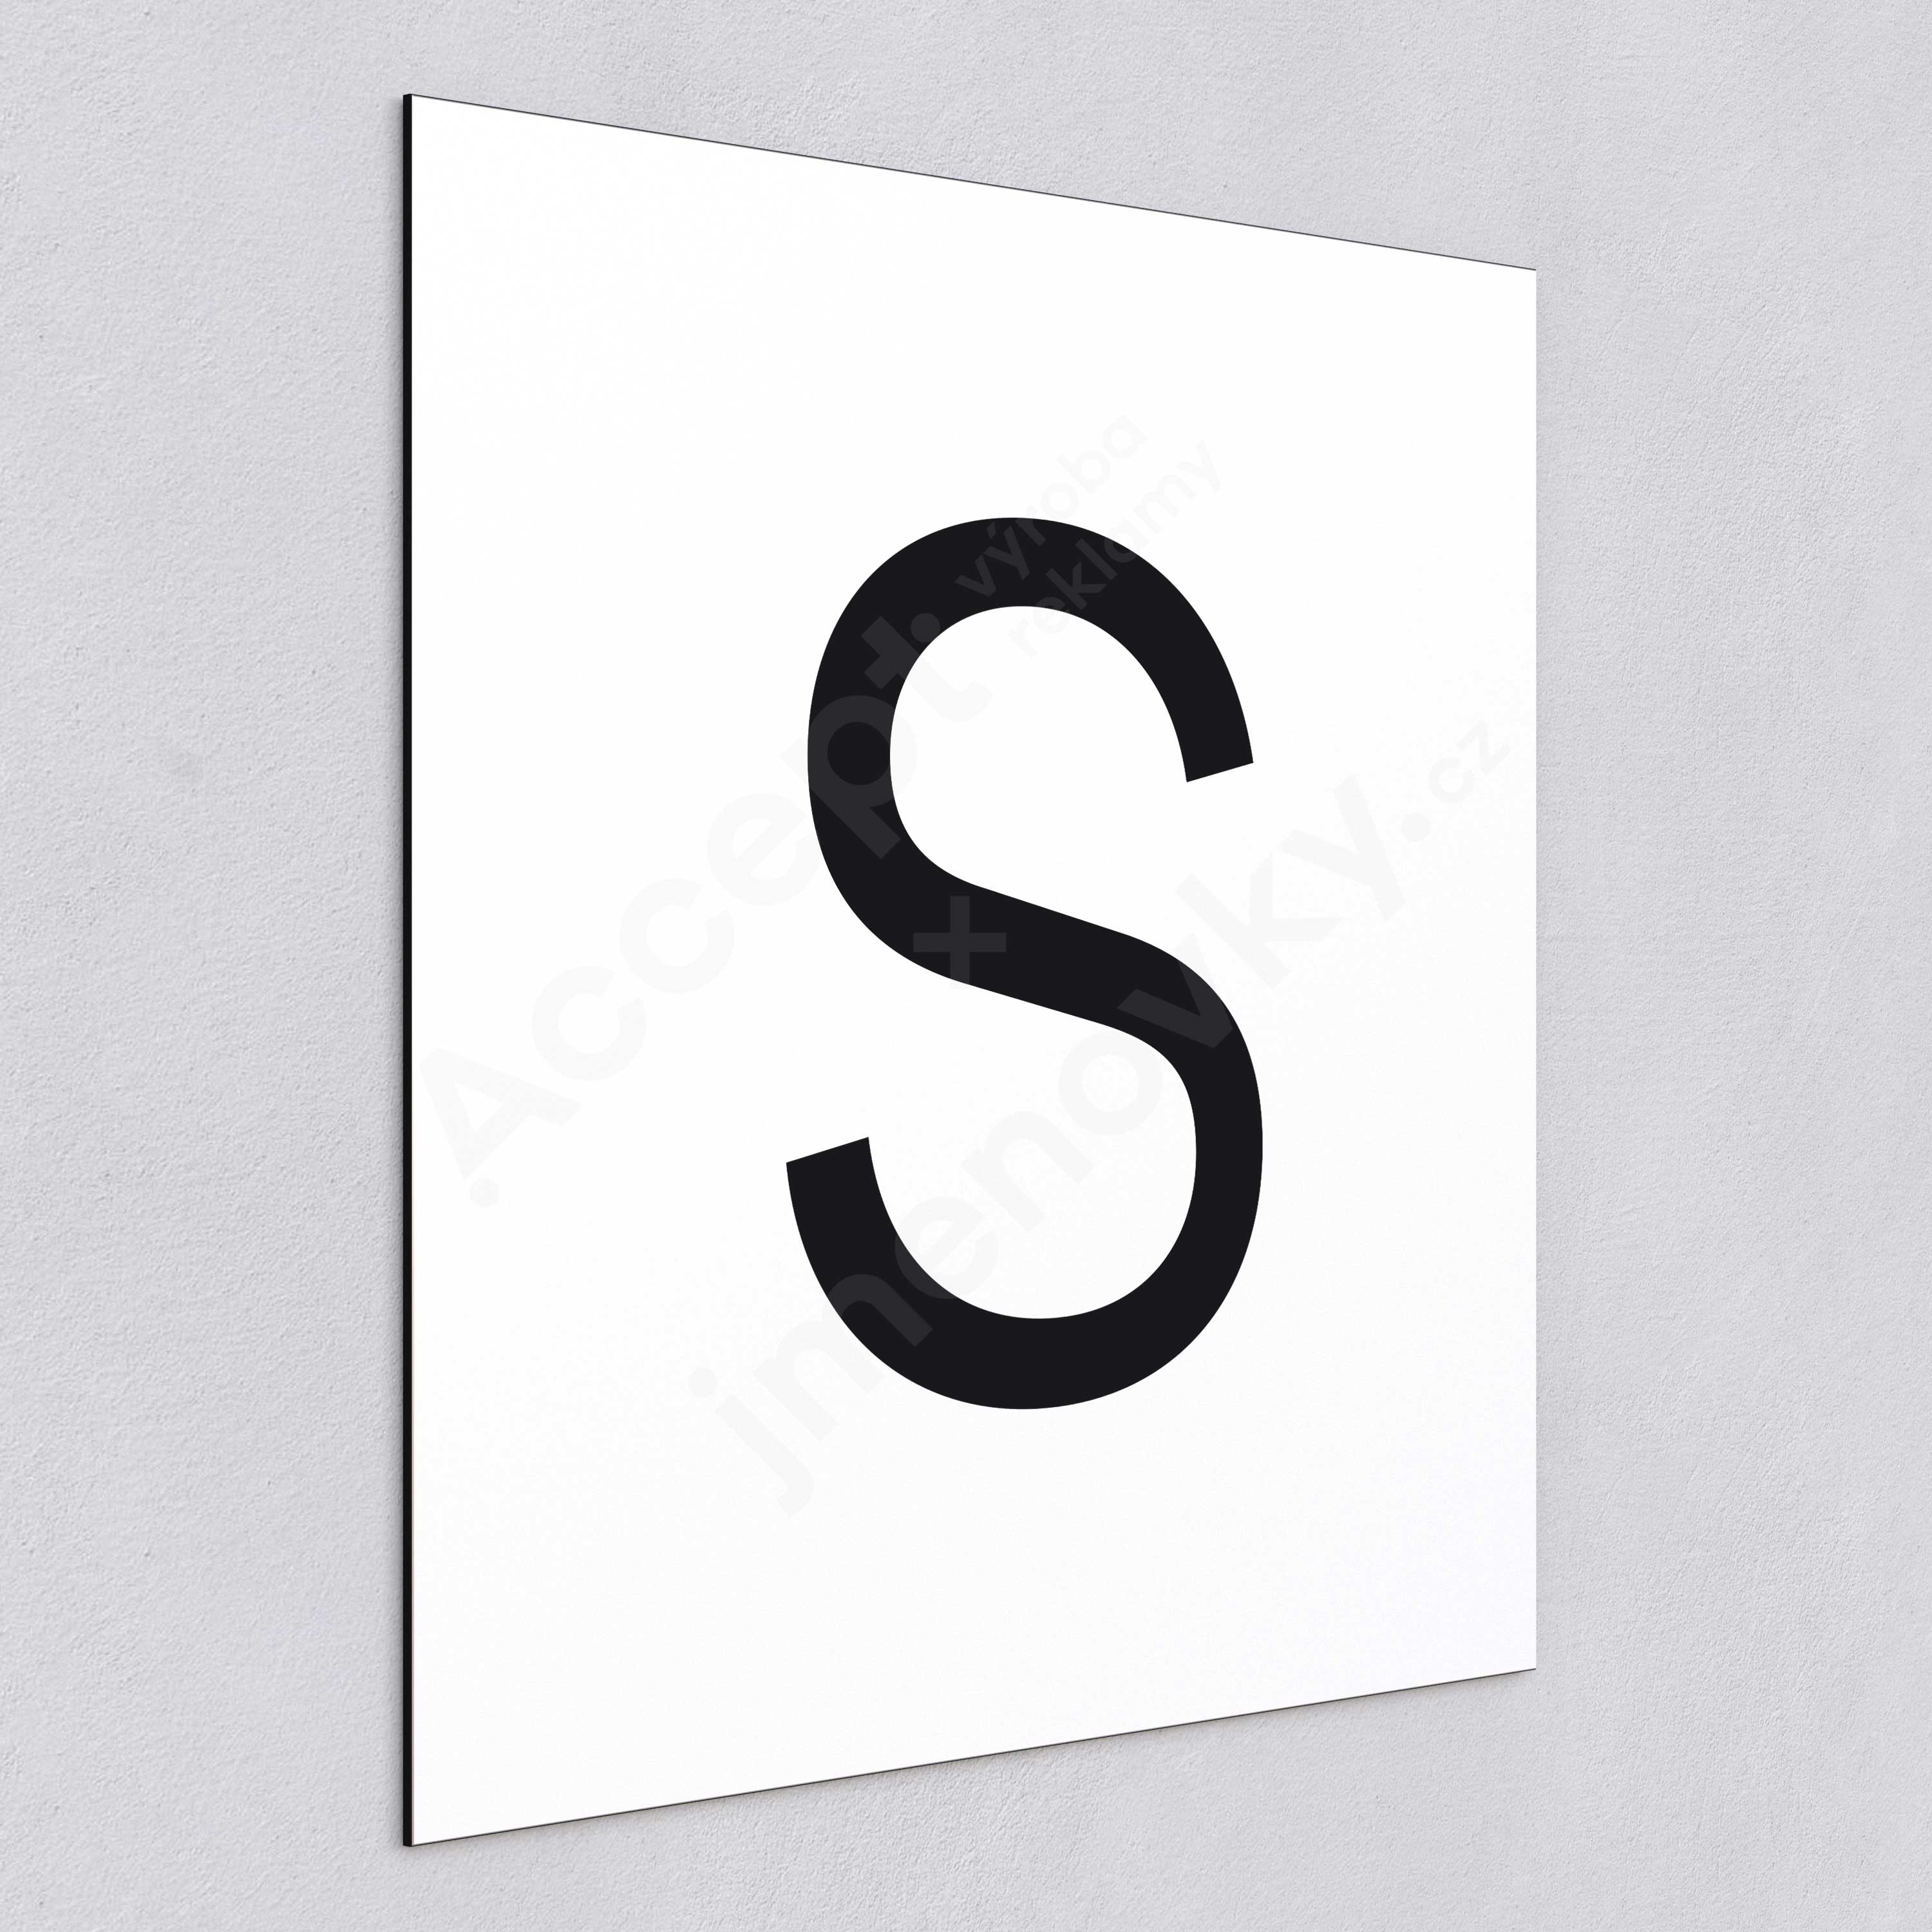 Označení podlaží - písmeno "S" - bílá tabulka - černý popis